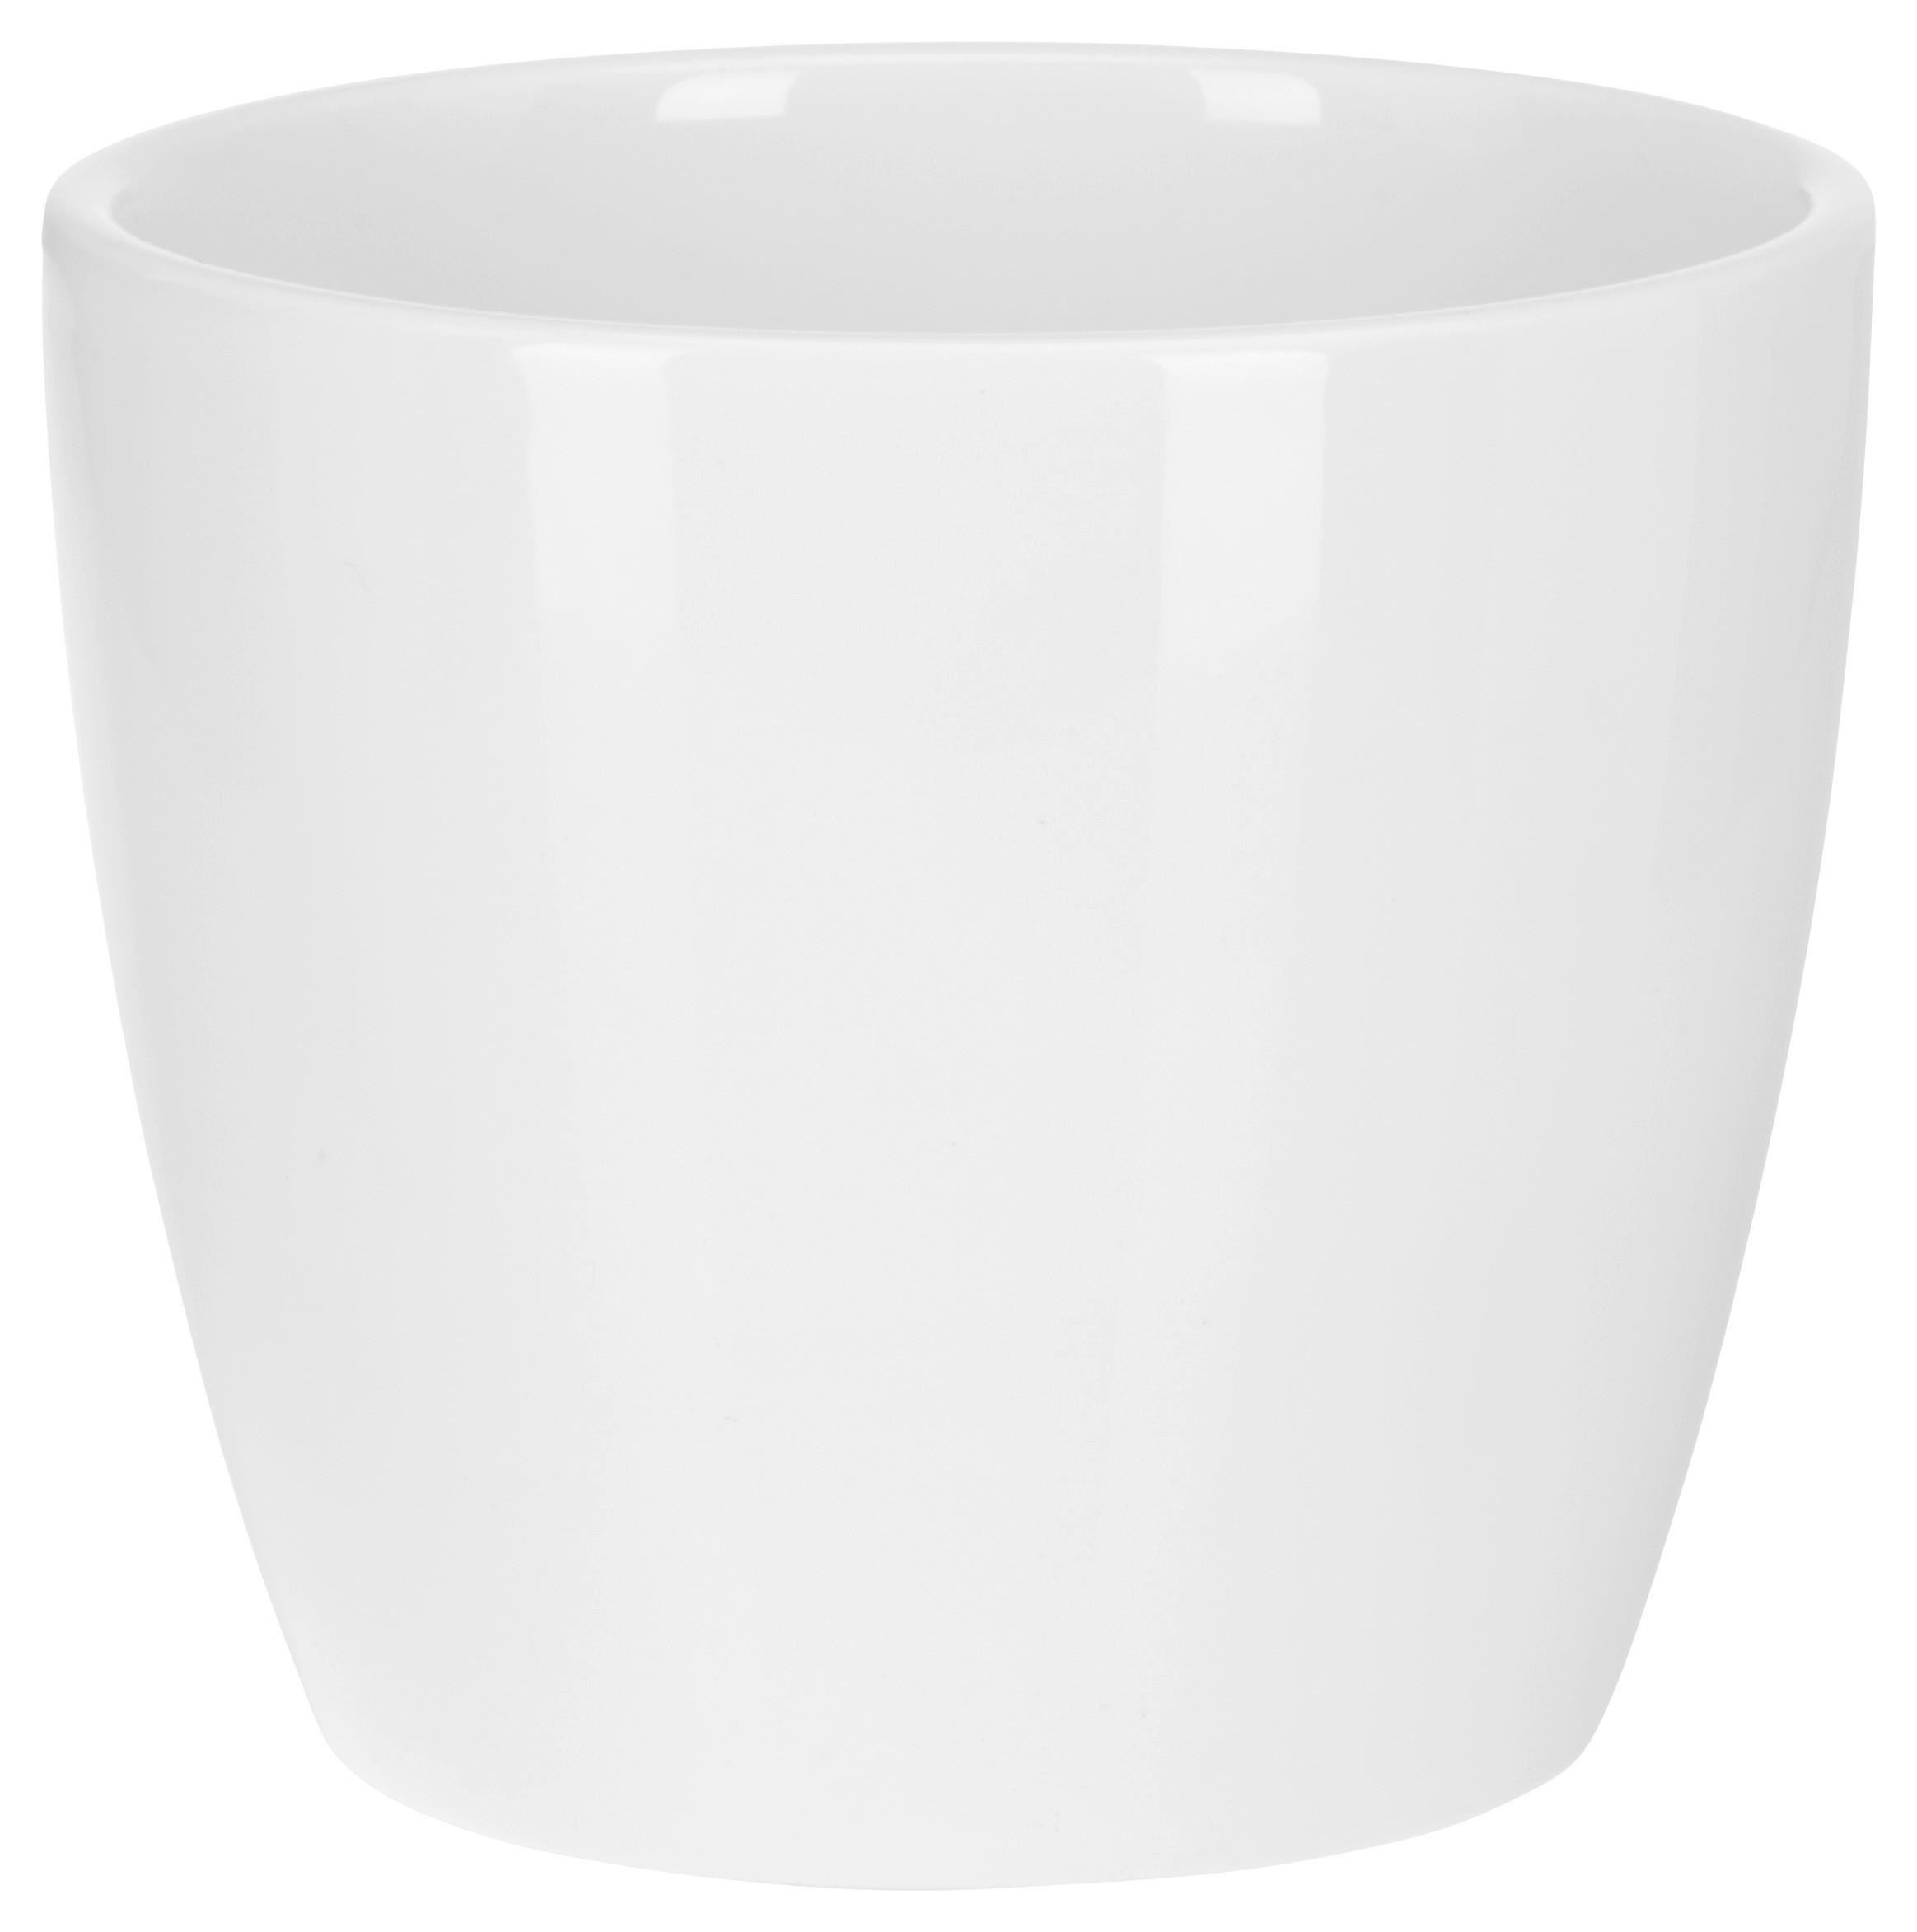 Nádoba Na Květináč Stefanie - bílá, keramika (10,3/8,9cm) - Based